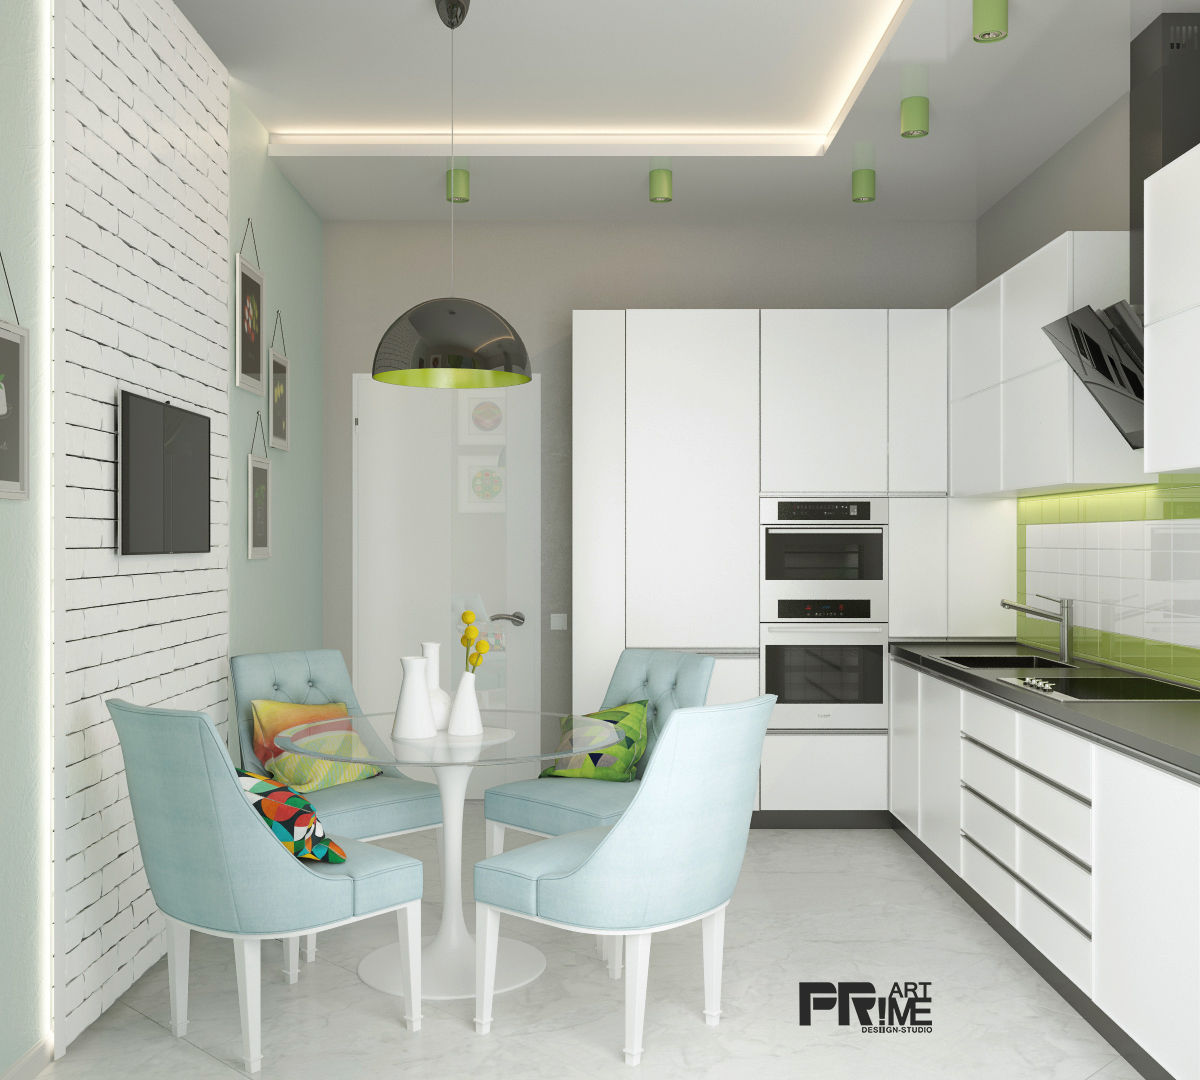 Из двухкомнатной квартиры сделали трехкомнатную и кабинет-гостевая!, "PRimeART" 'PRimeART' Cocinas de estilo minimalista